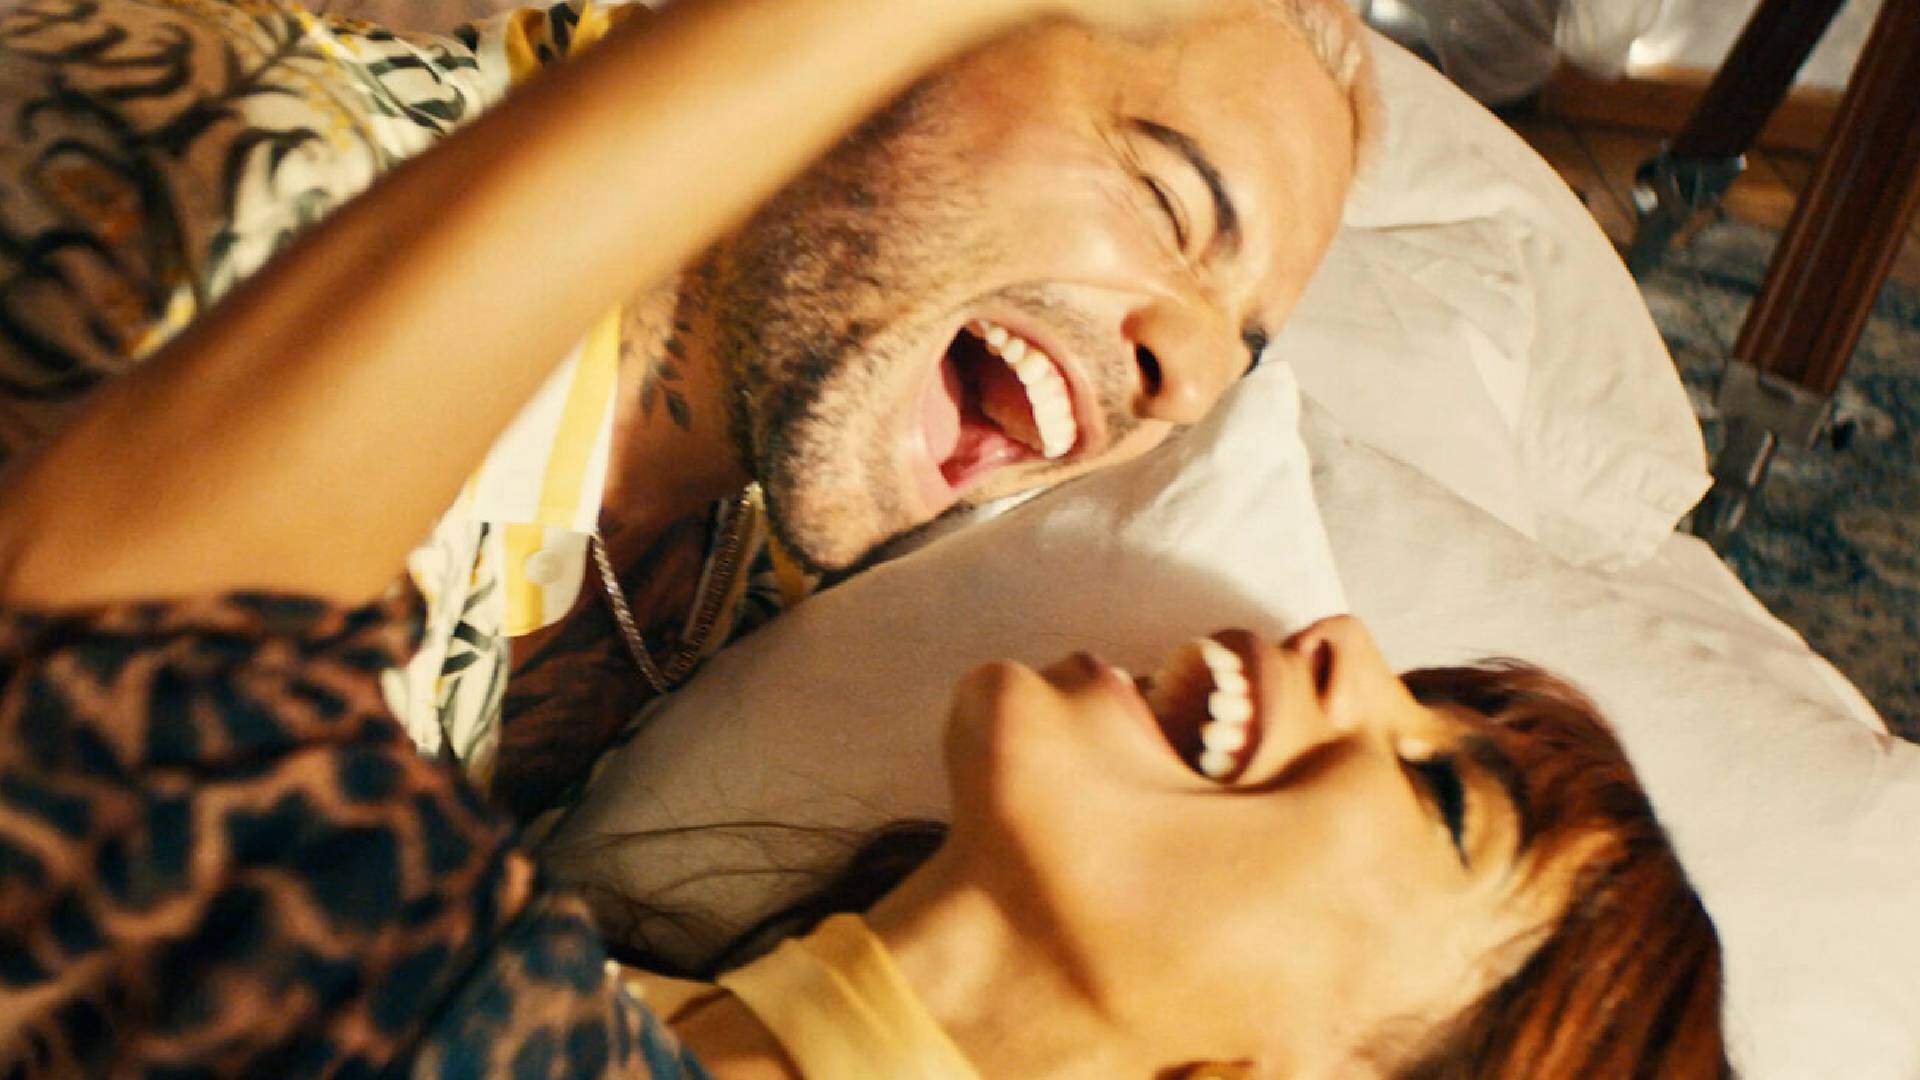 Tá rolando? Anitta protagoniza cenas românticas com Maluma em vídeo e fã dispara: “Shippo” - Metropolitana FM